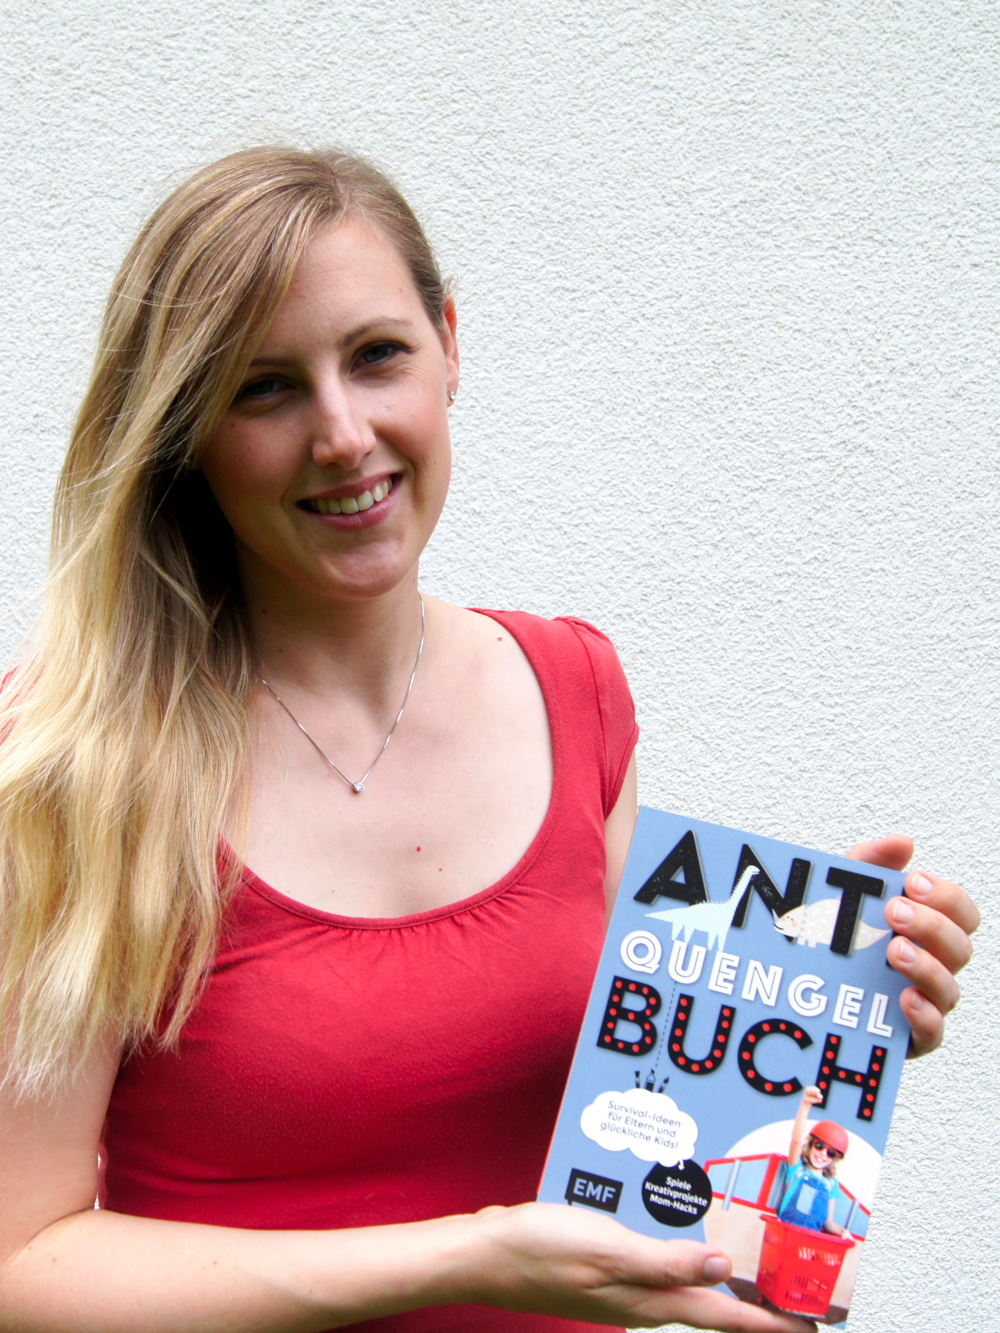 Anti Quengel Buch - Ein Bastelbuch mit Bindungsspielen, Sinnesspielen, Bewegungsspielen und Rezepte für Kinder und Familien